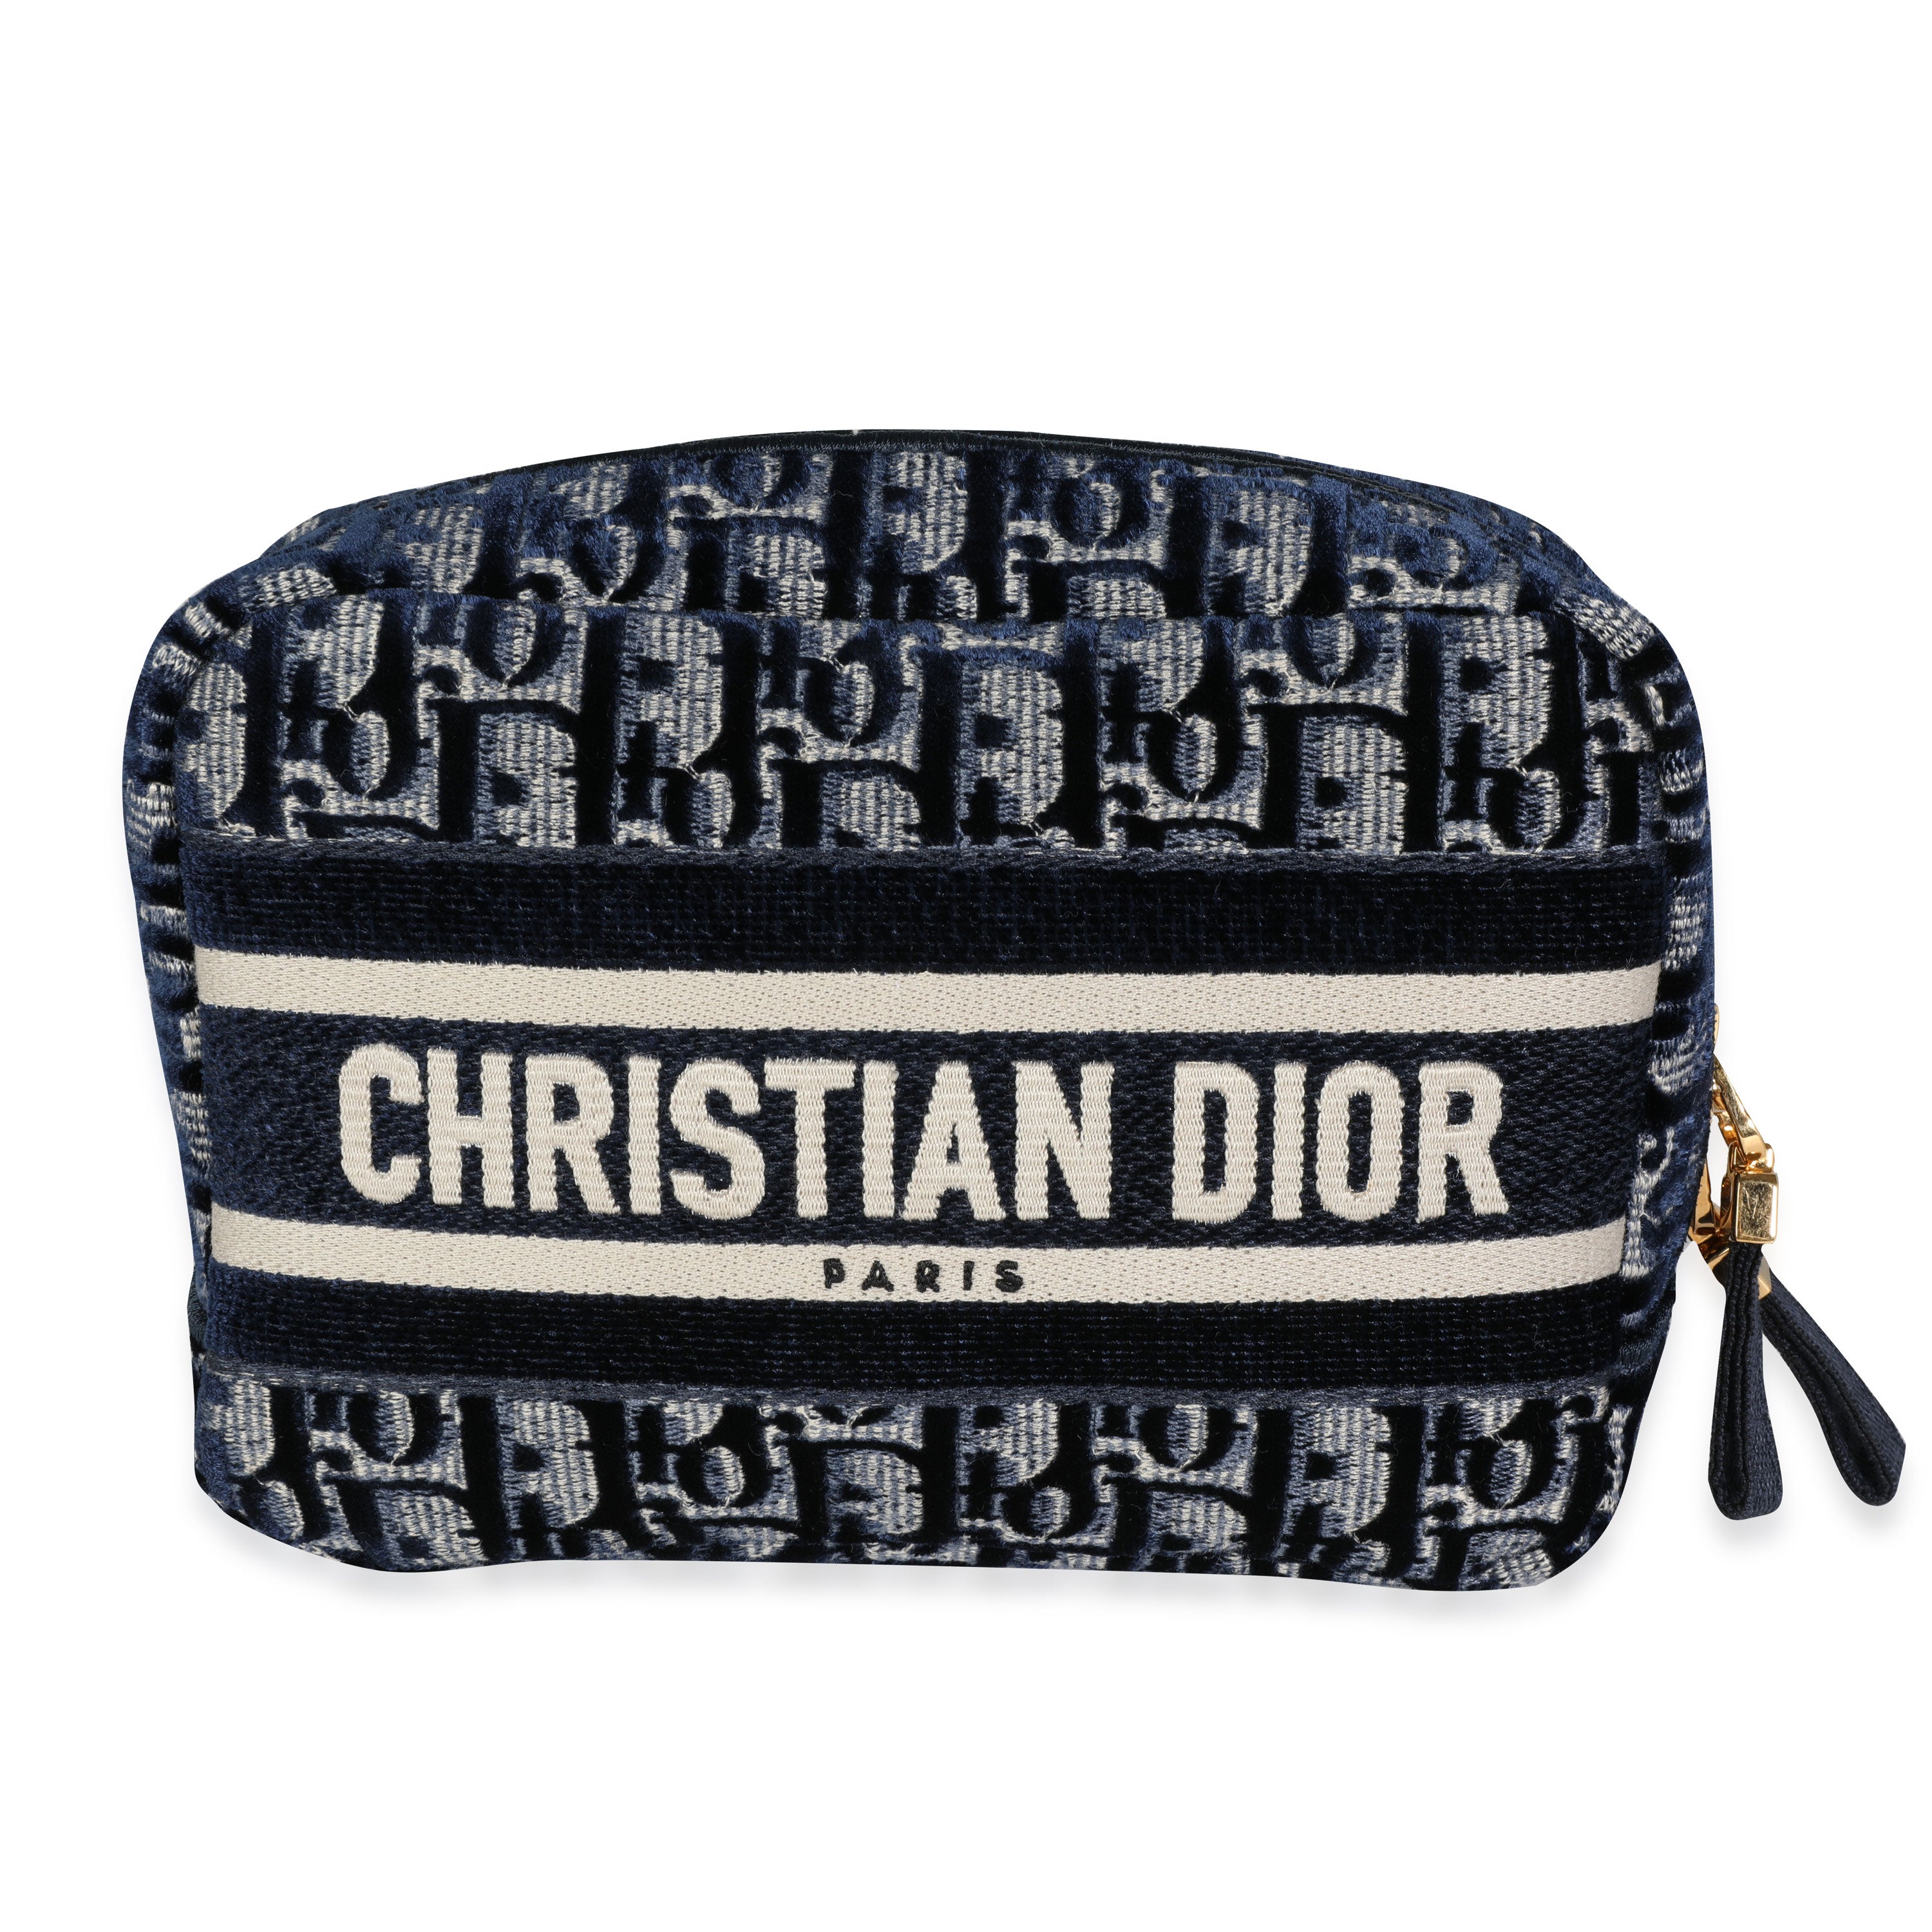 Christian Dior. A pencil case